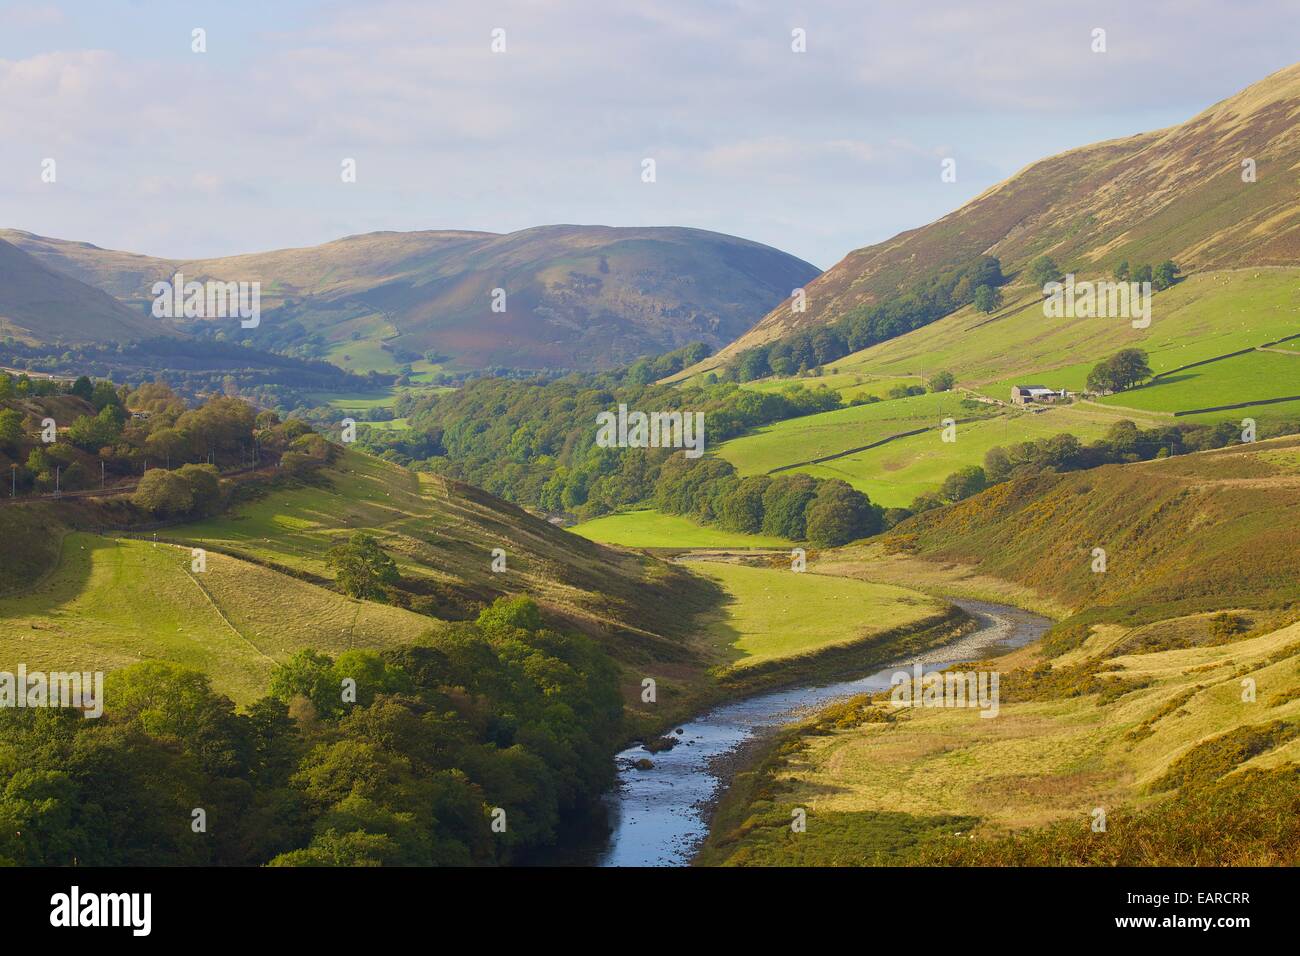 Lune Valley Teil der Yorkshire Dales und Lake District verlängert Nationalparks von August 2016. Cumbria, UK. Stockfoto